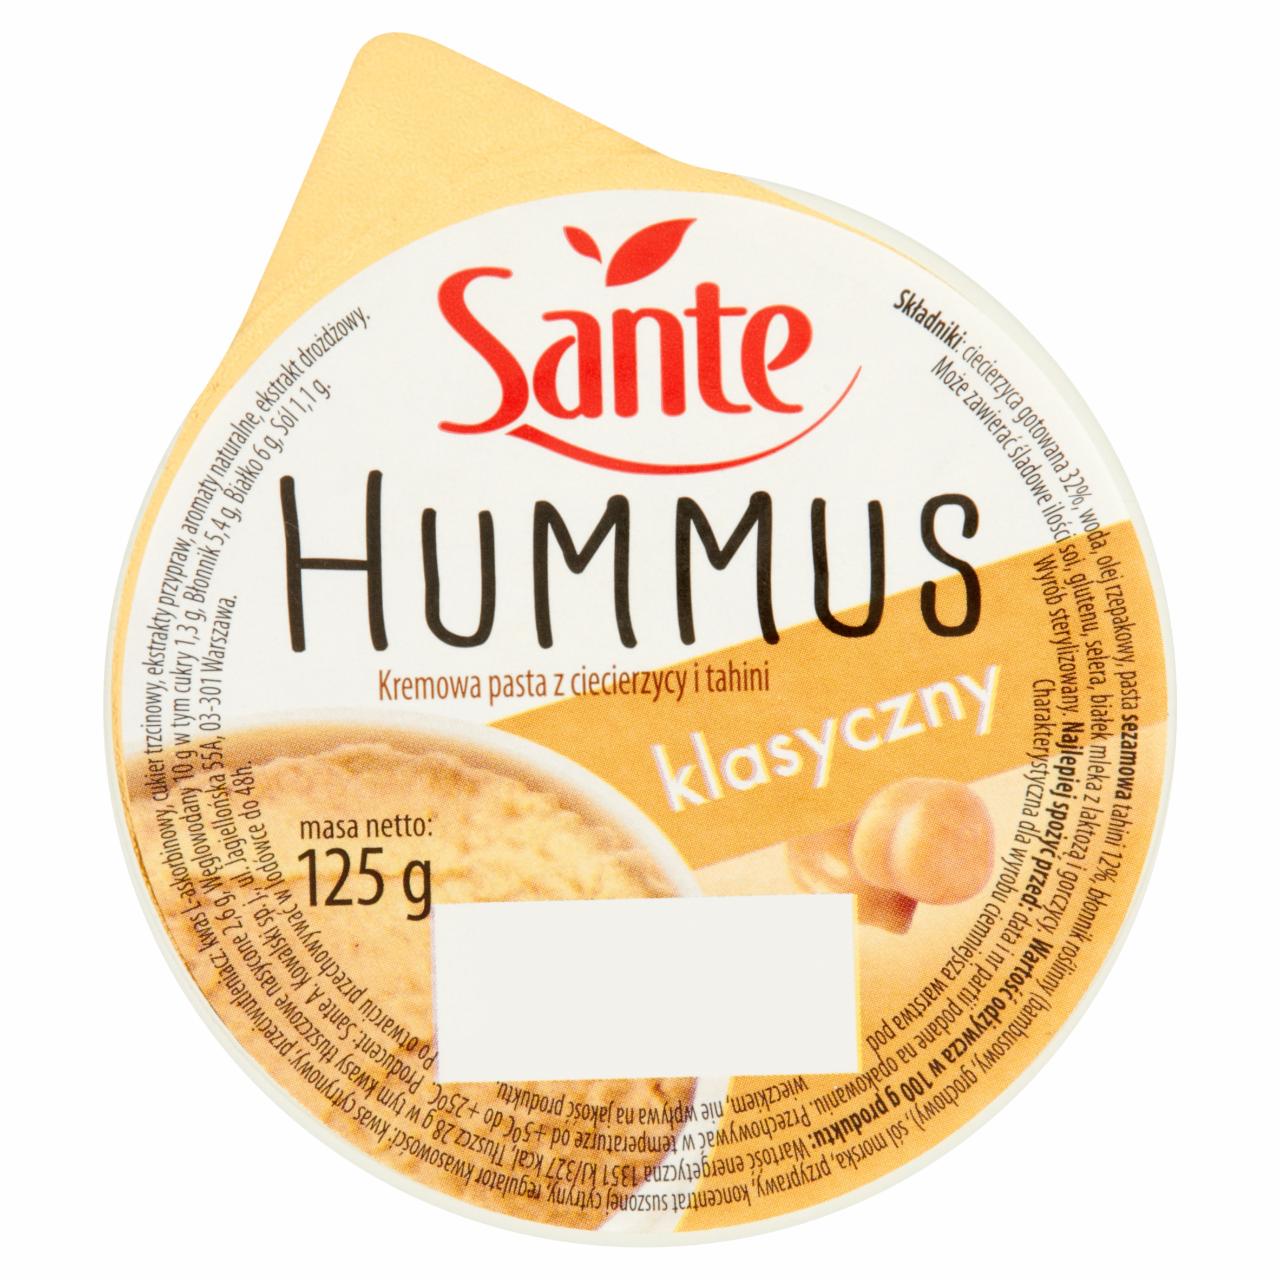 Zdjęcia - Sante Hummus klasyczny Kremowa pasta z ciecierzycy i tahini 125 g